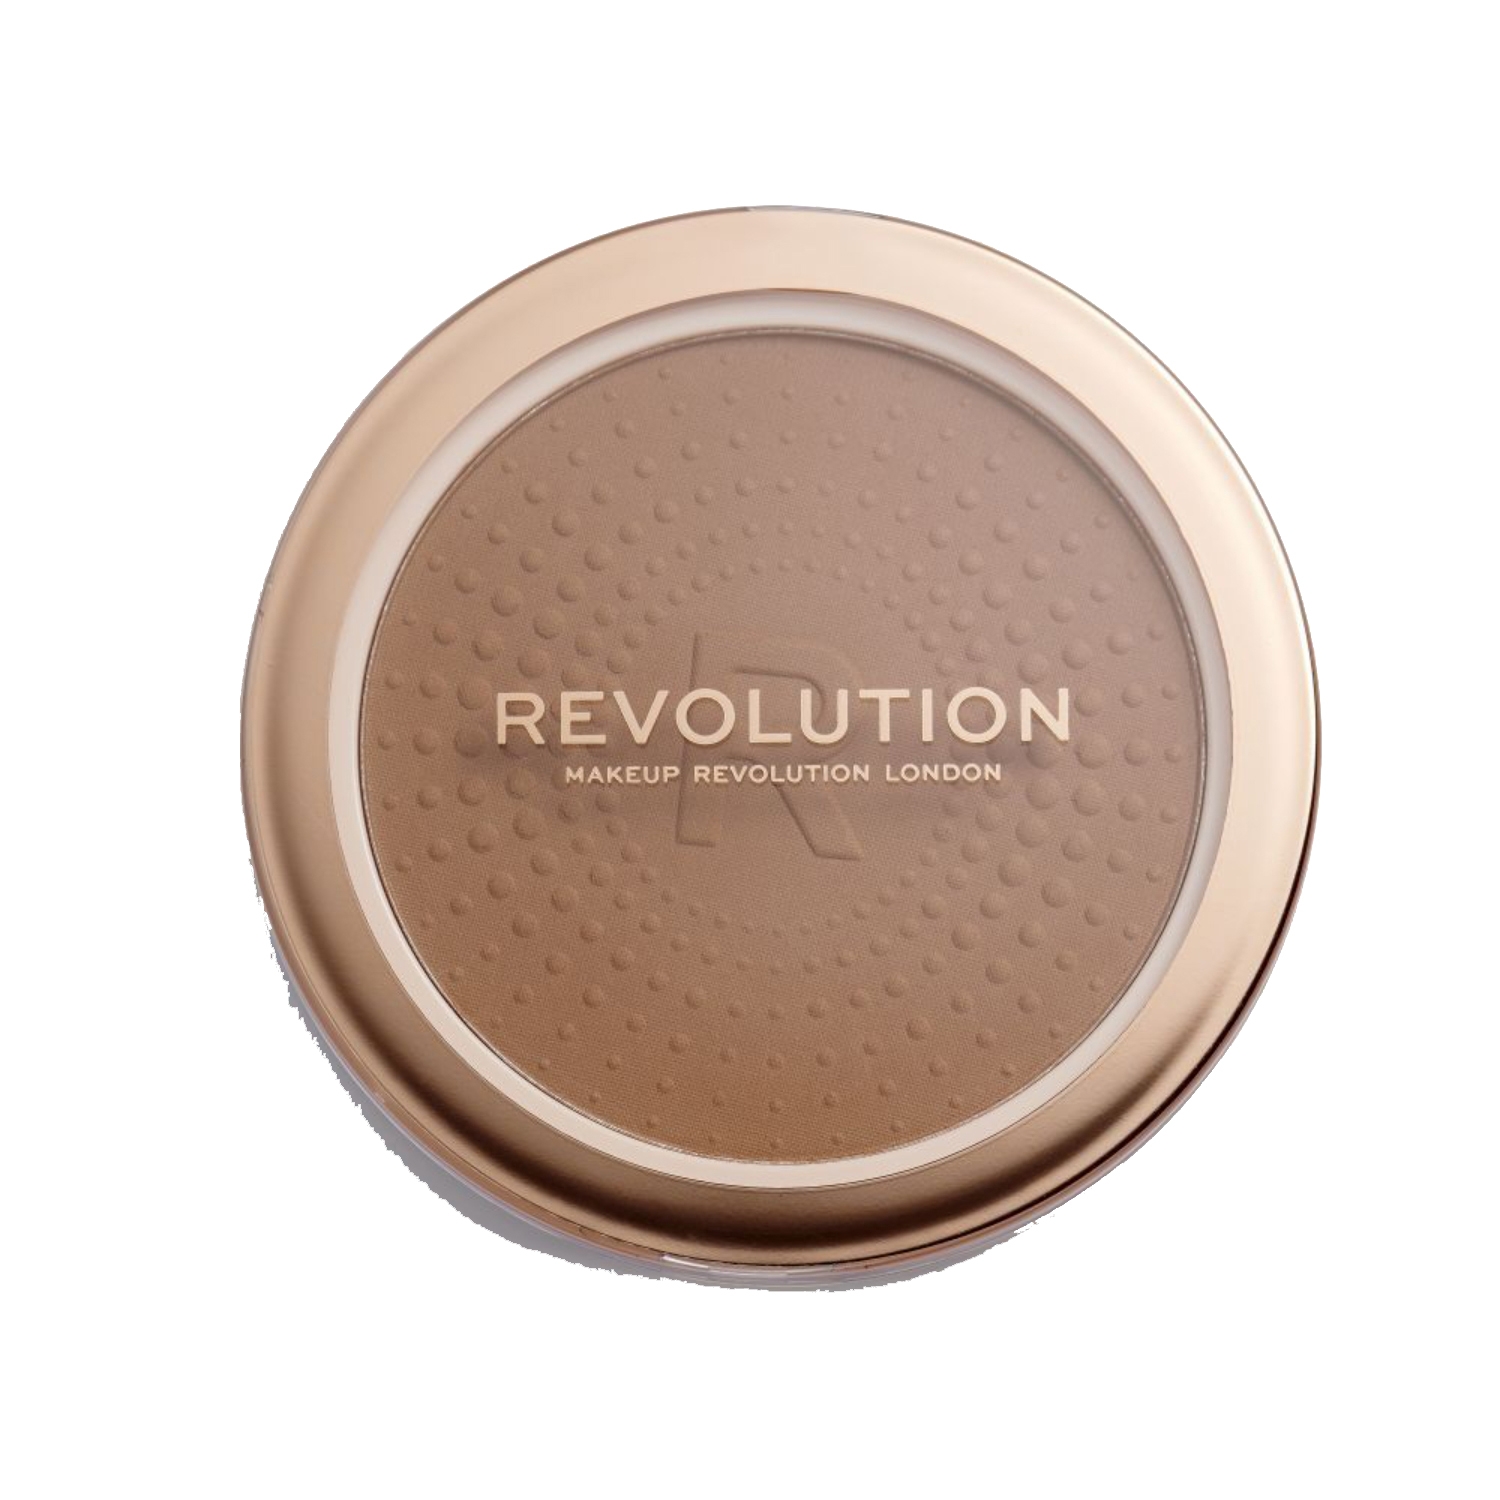 Makeup Revolution Mega Bronzer - 02 Warm (15g)